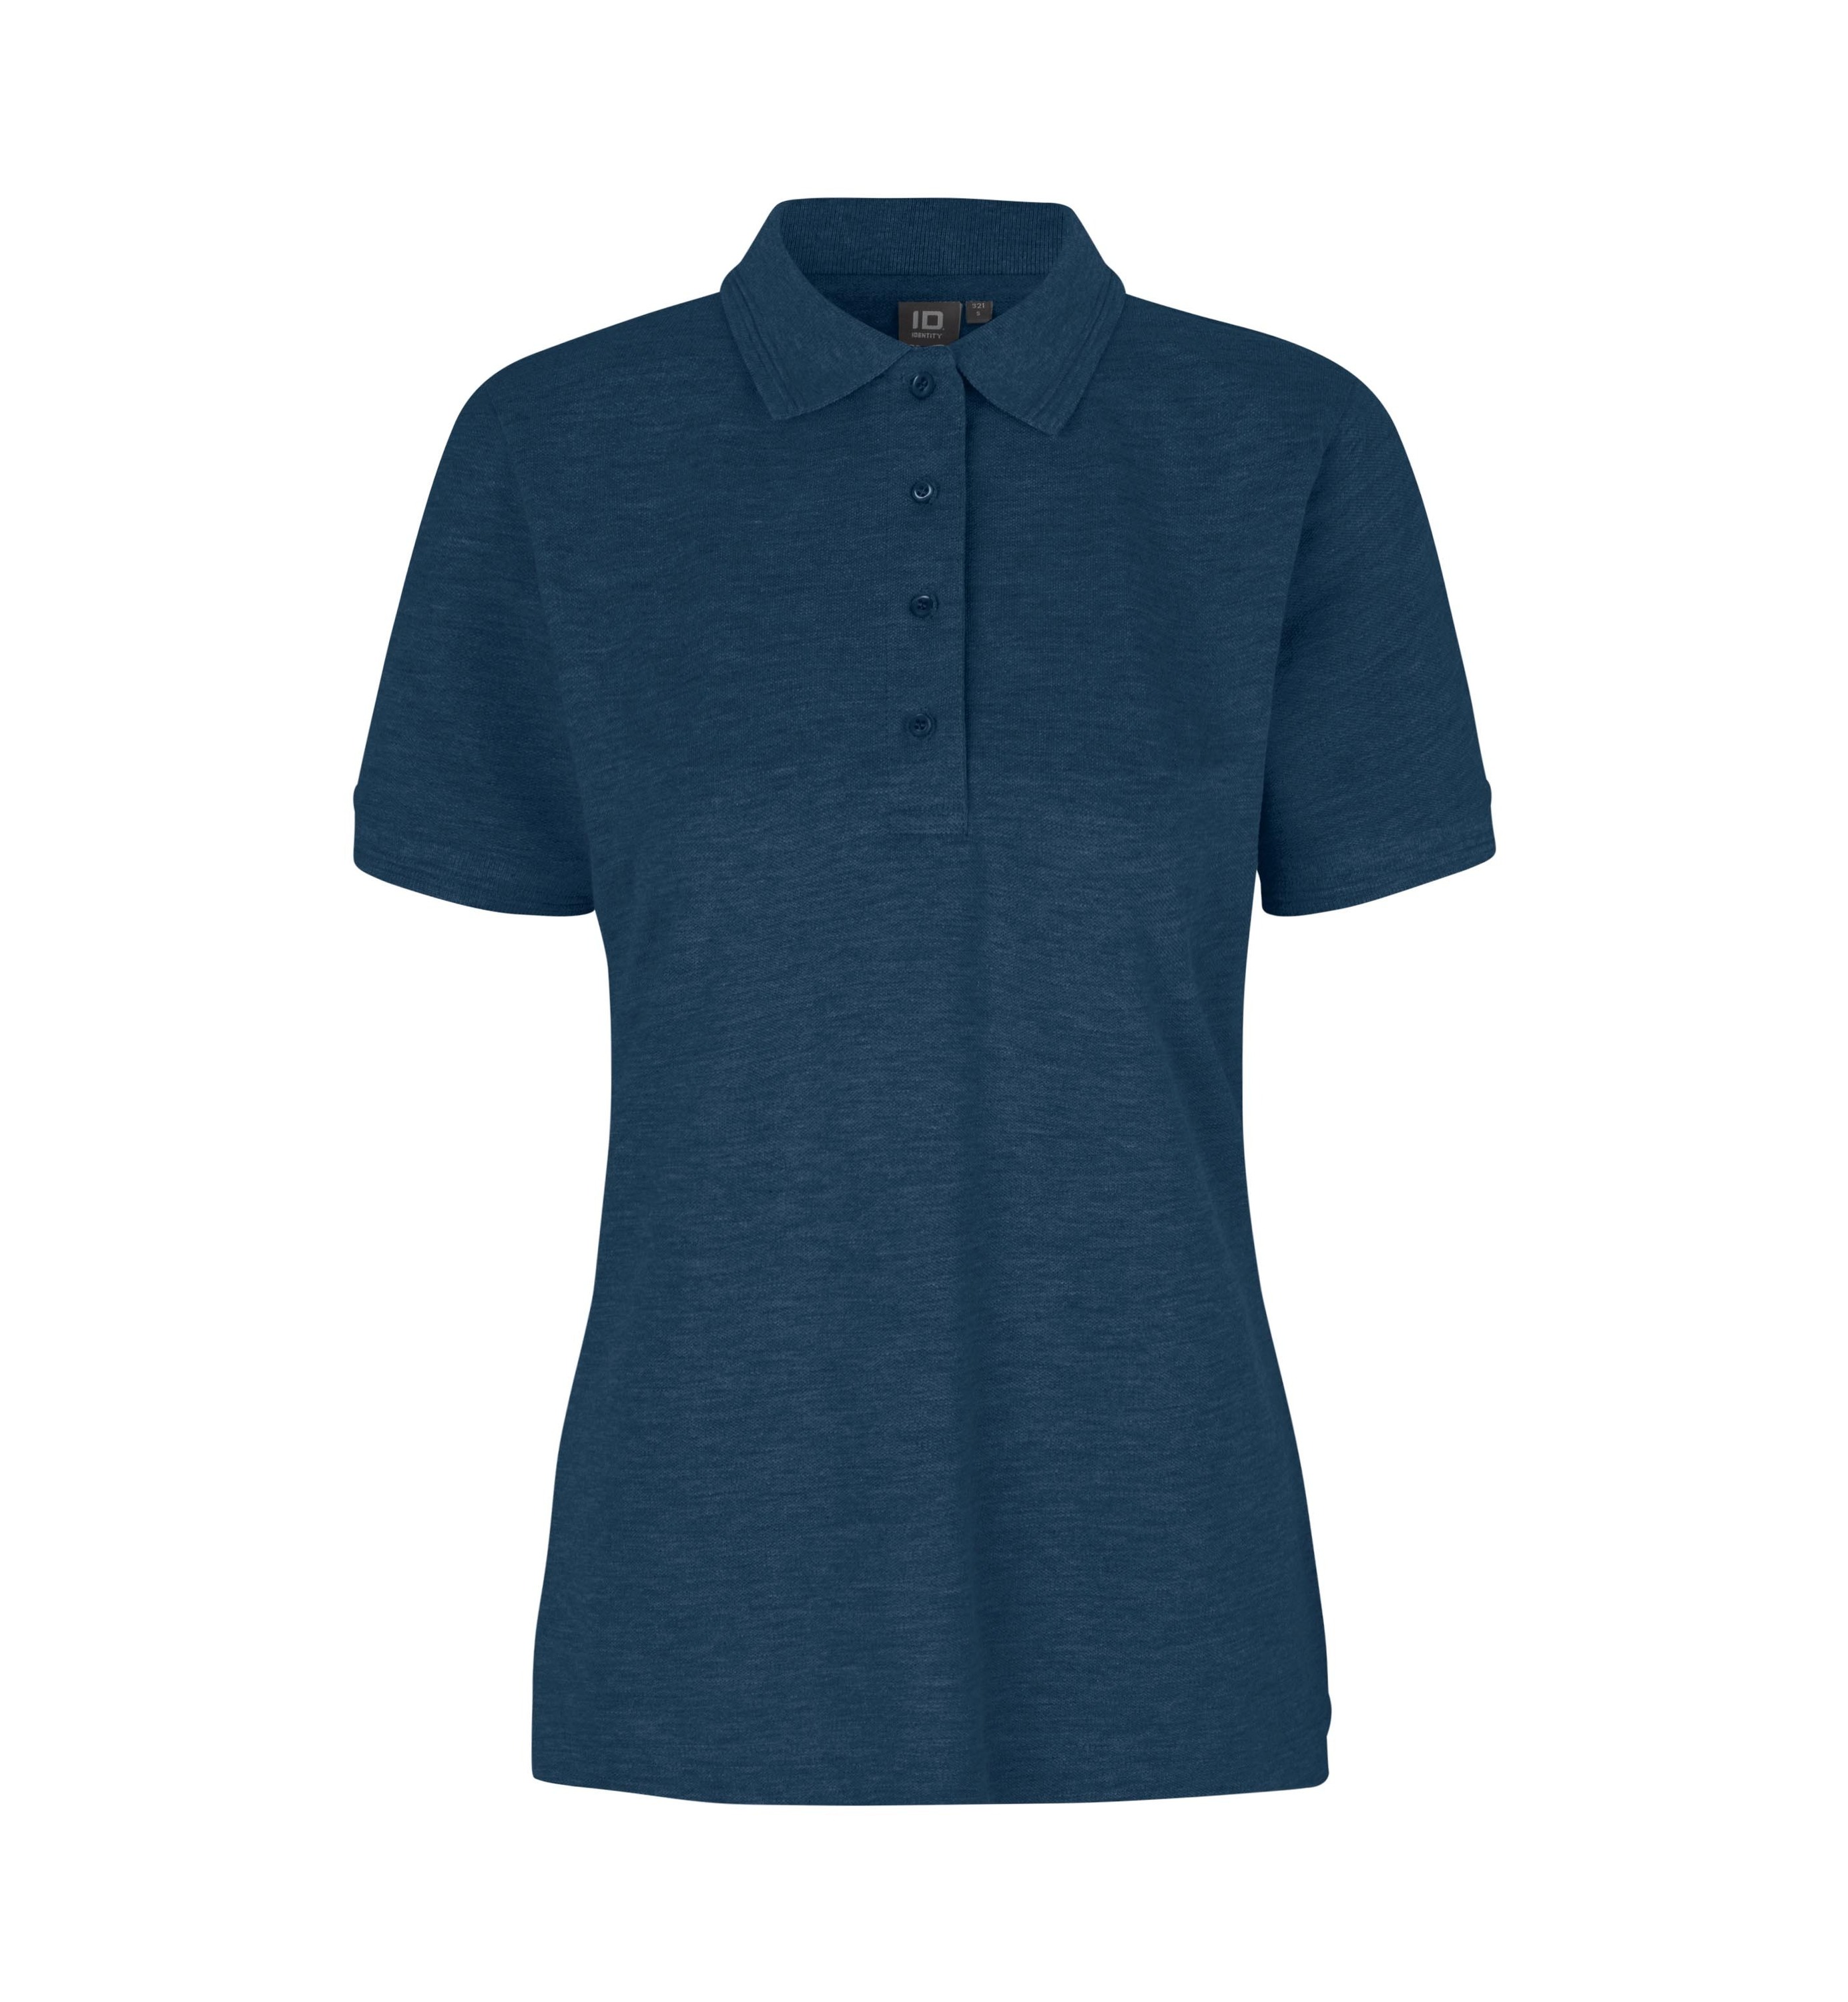 Поло PRO Wear by ID Polo Shirt klassisch, синий